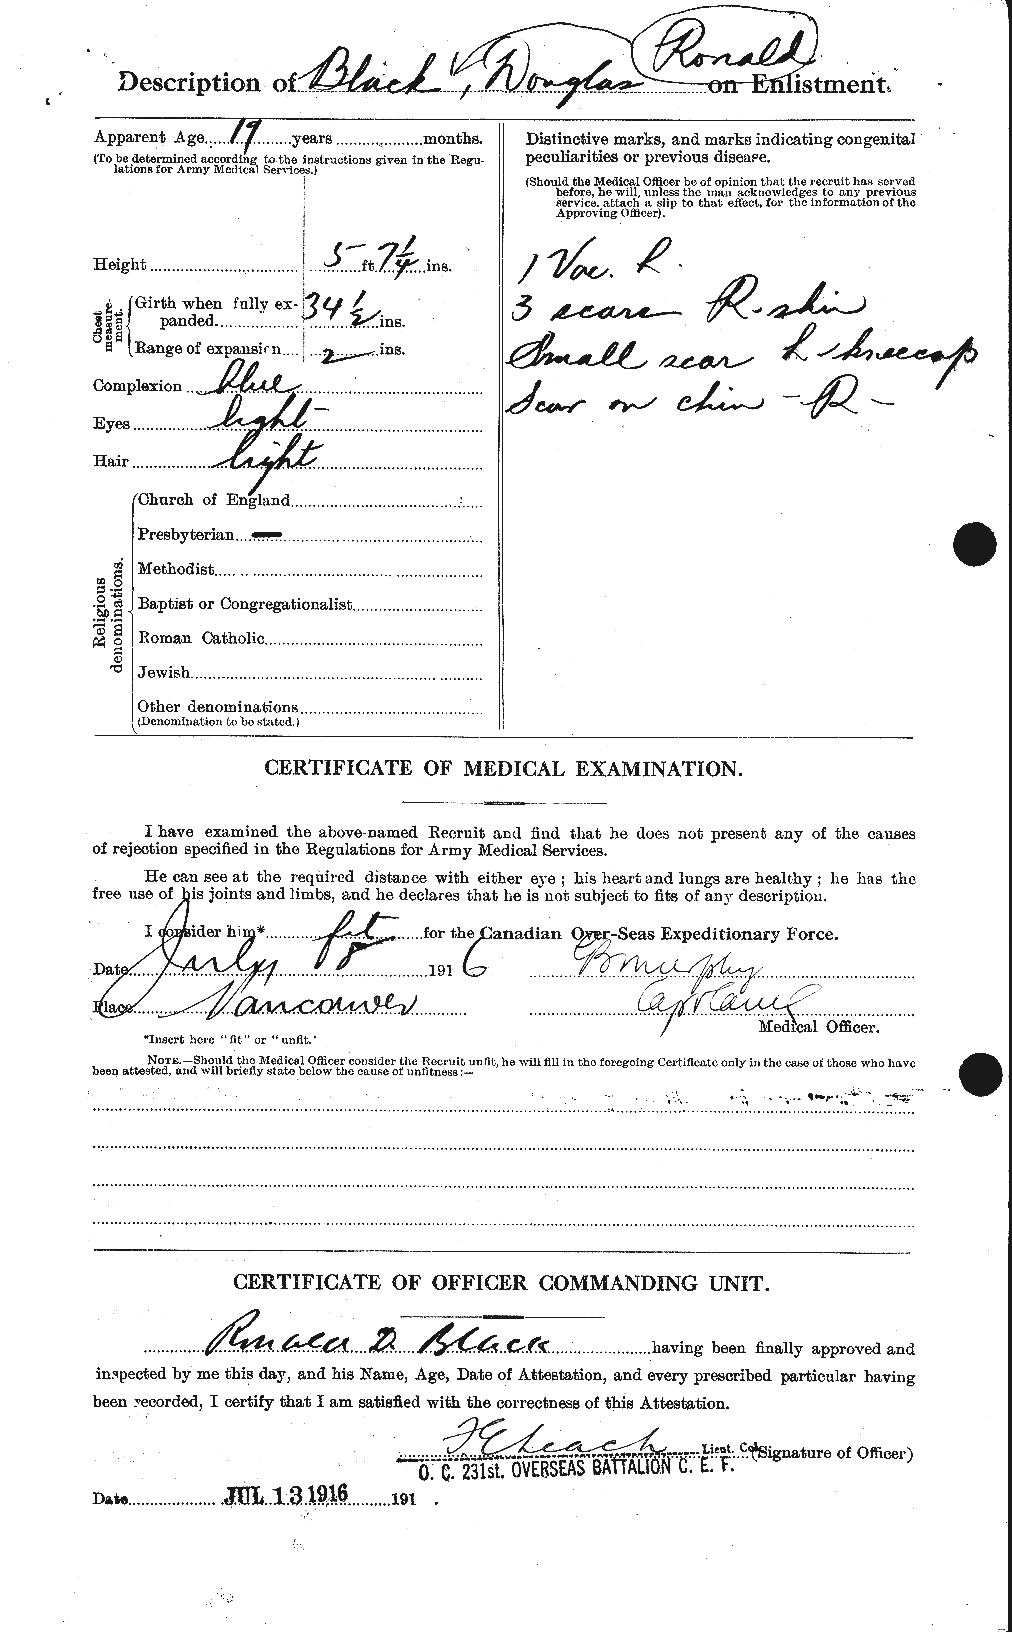 Dossiers du Personnel de la Première Guerre mondiale - CEC 247600b